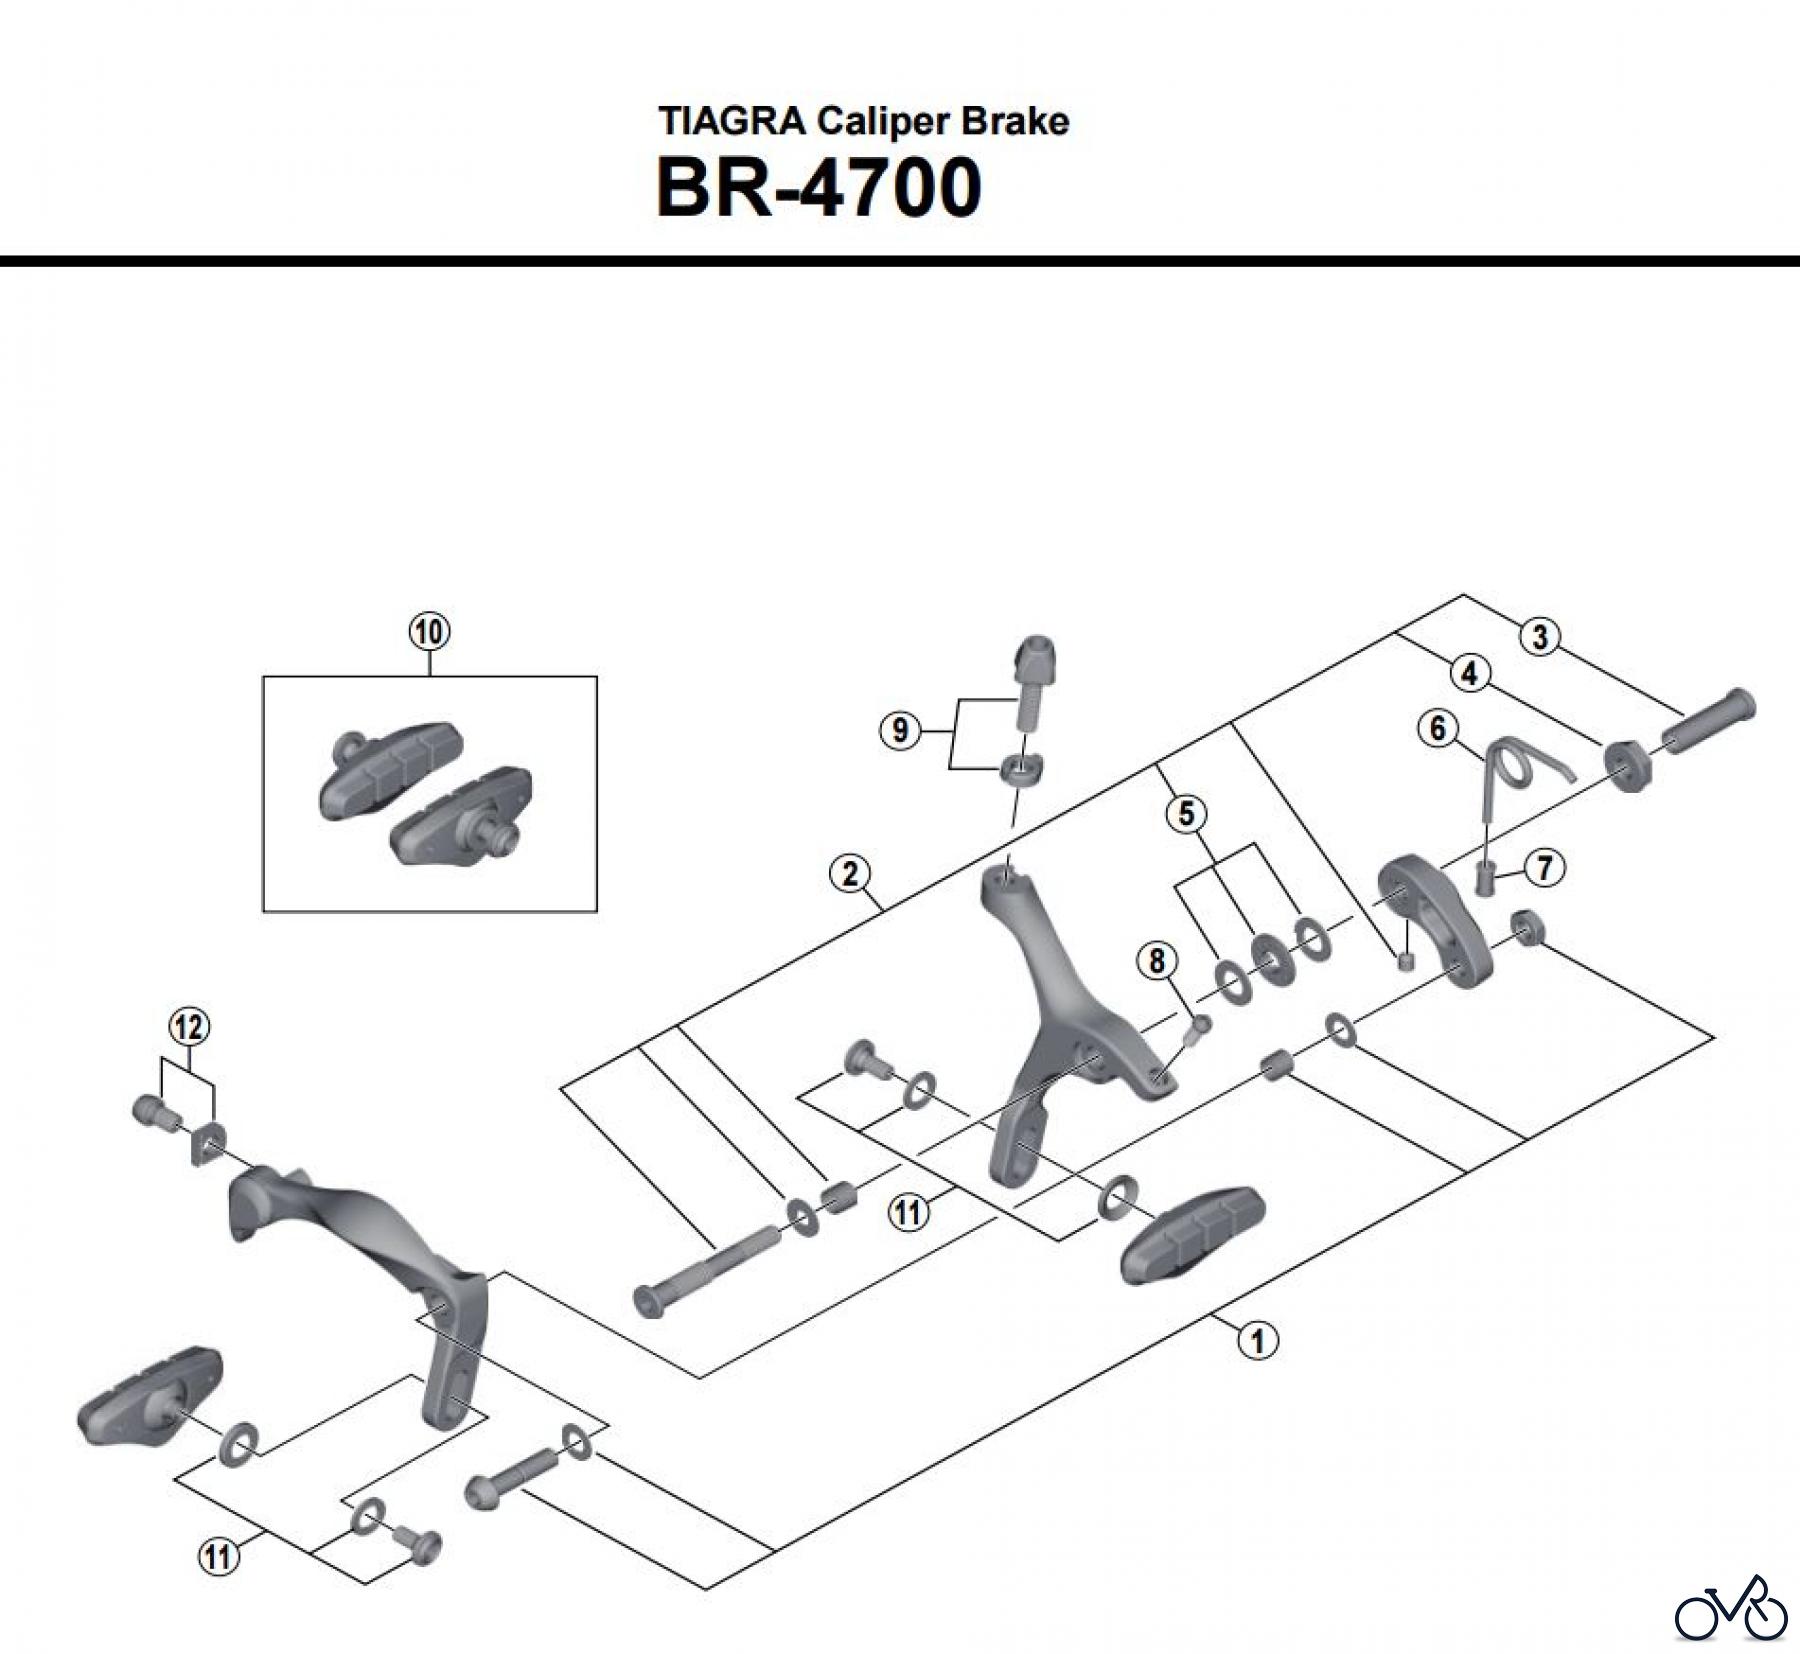  Shimano BR Brake - Bremse BR-4700 -3865  TIAGRA Caliper Brake